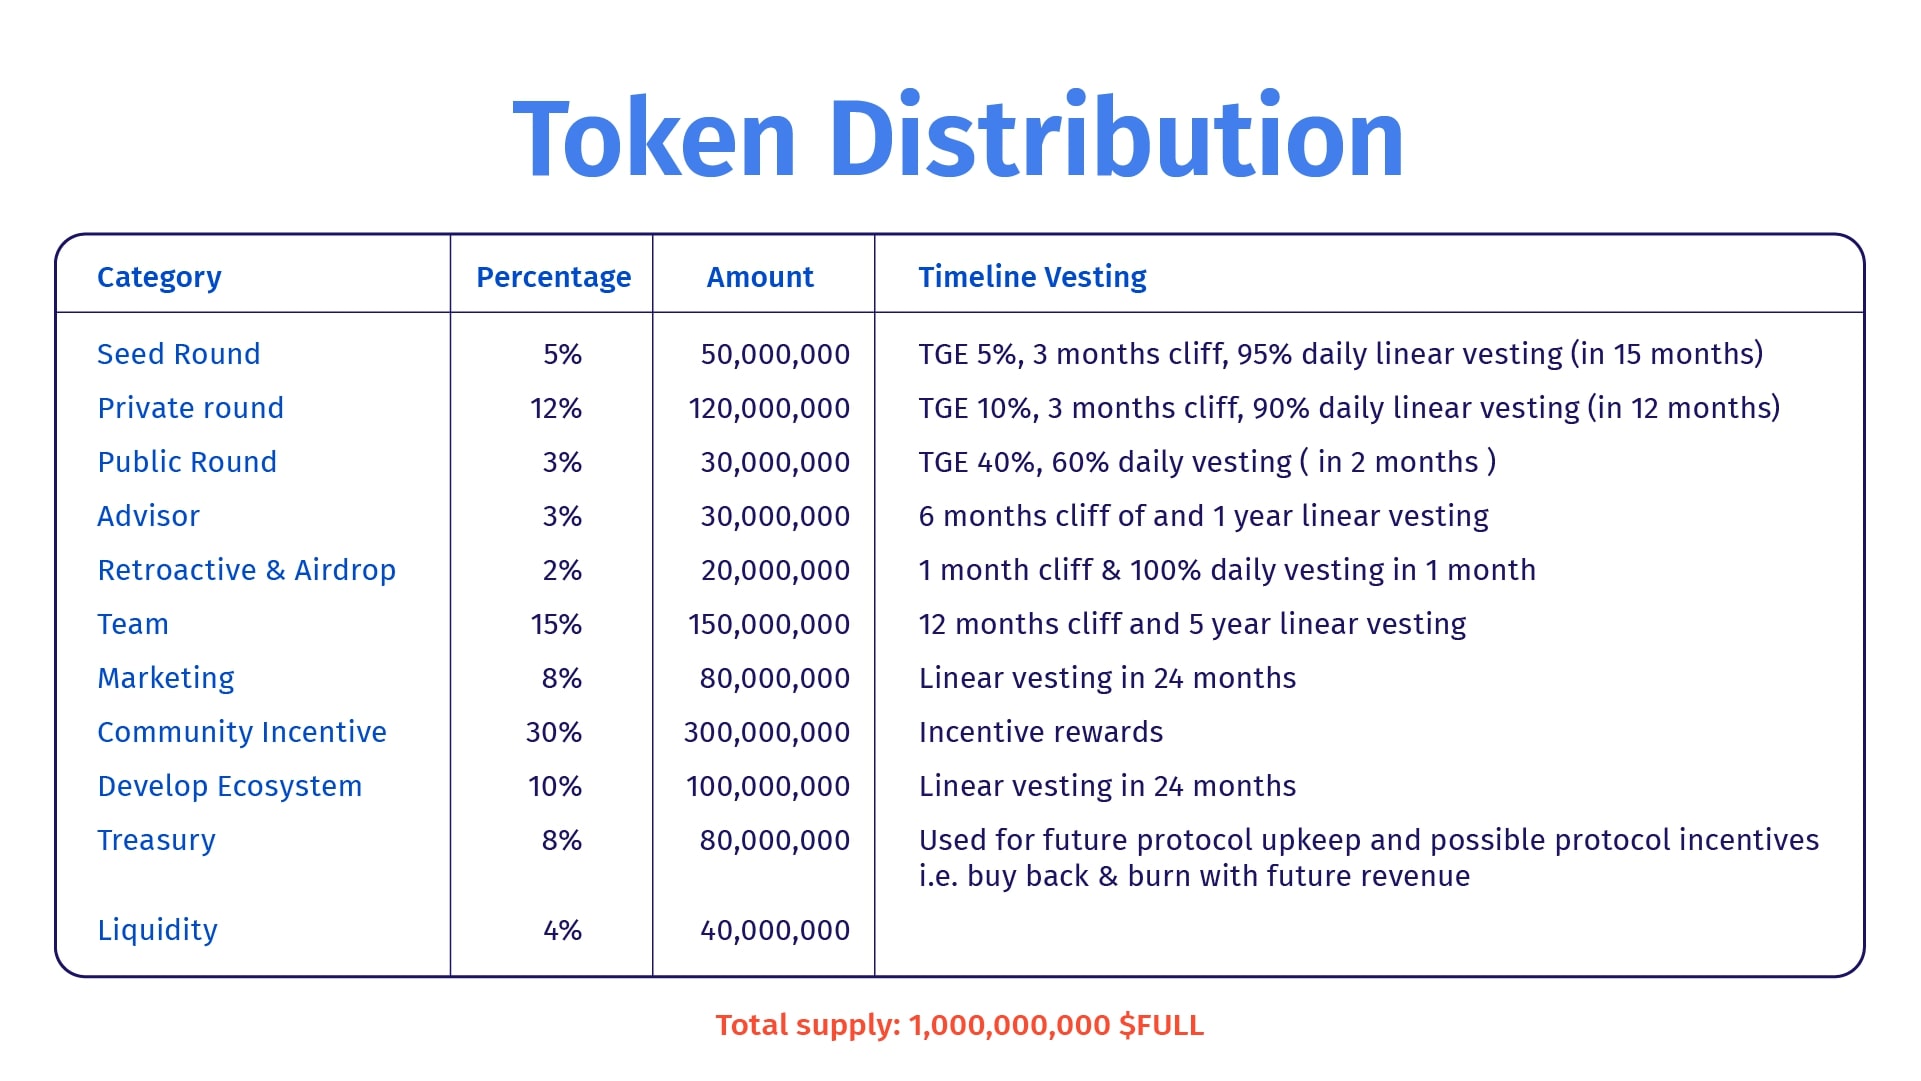 FULL token distribution